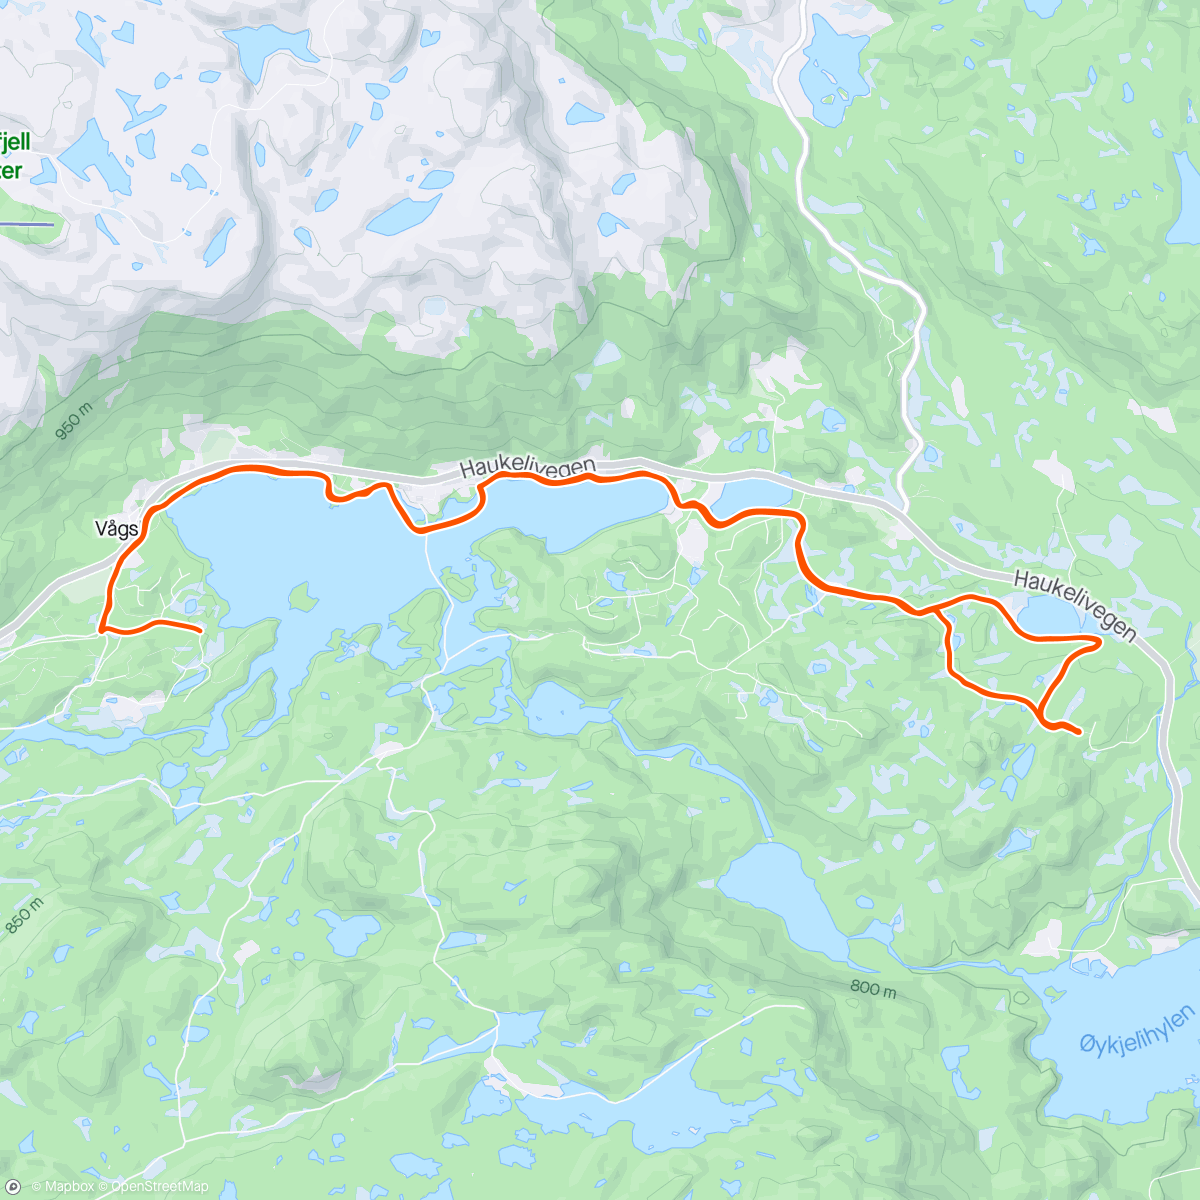 Map of the activity, Øykjeli (s)